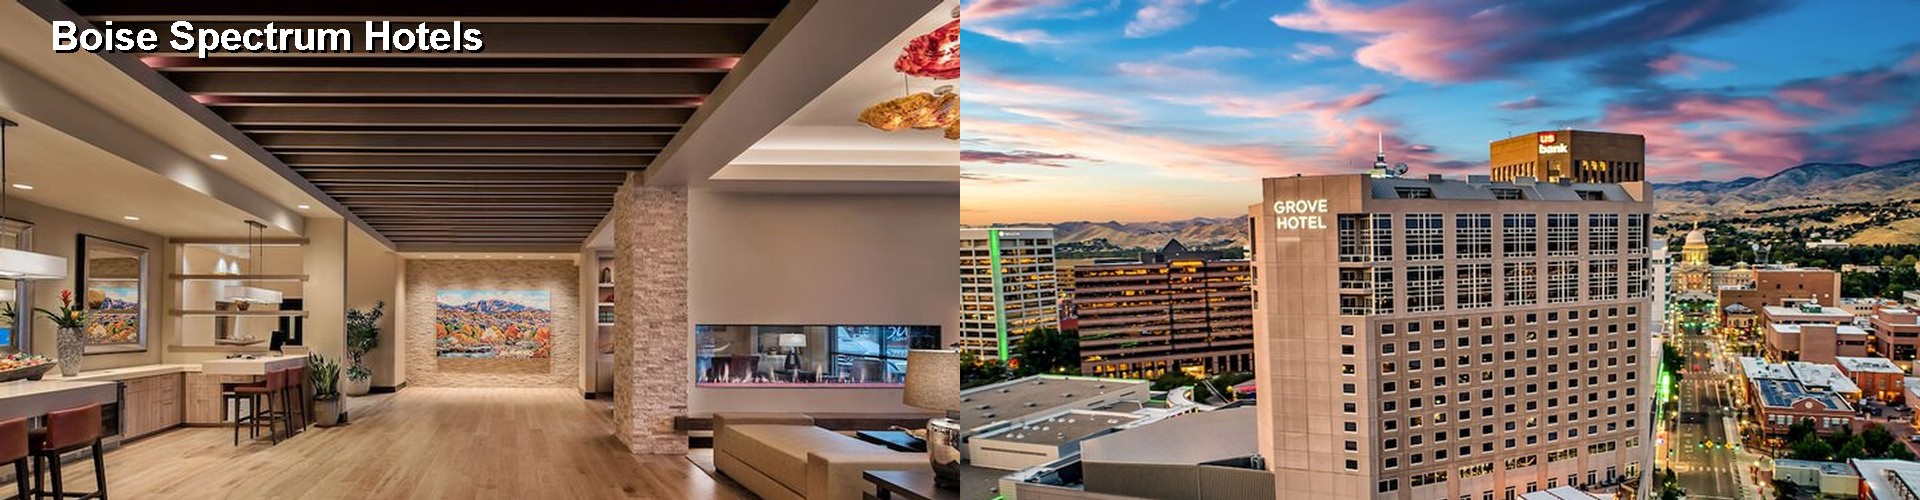 5 Best Hotels near Boise Spectrum